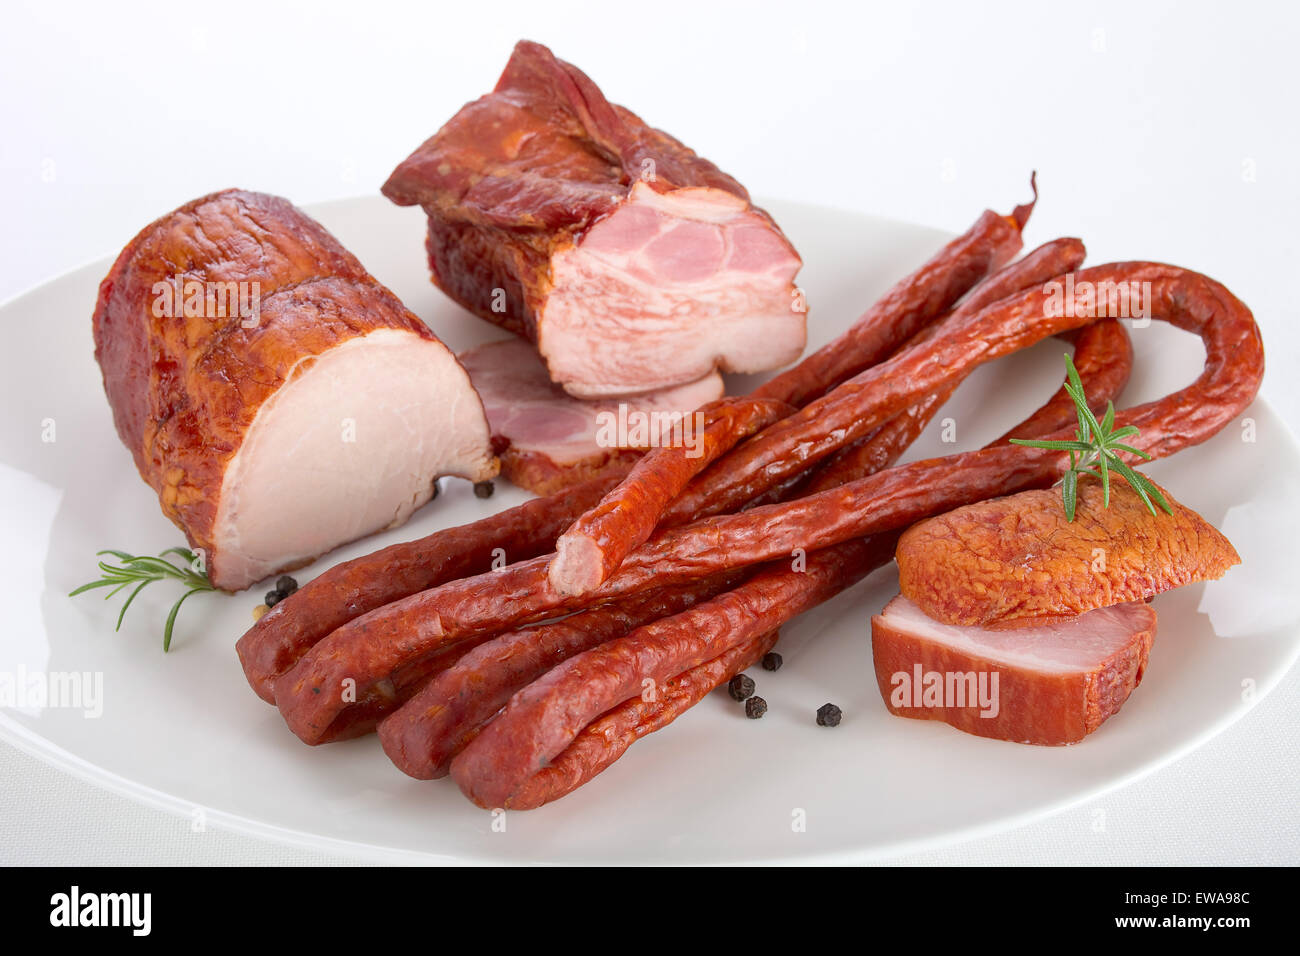 Meat delicacies Stock Photo